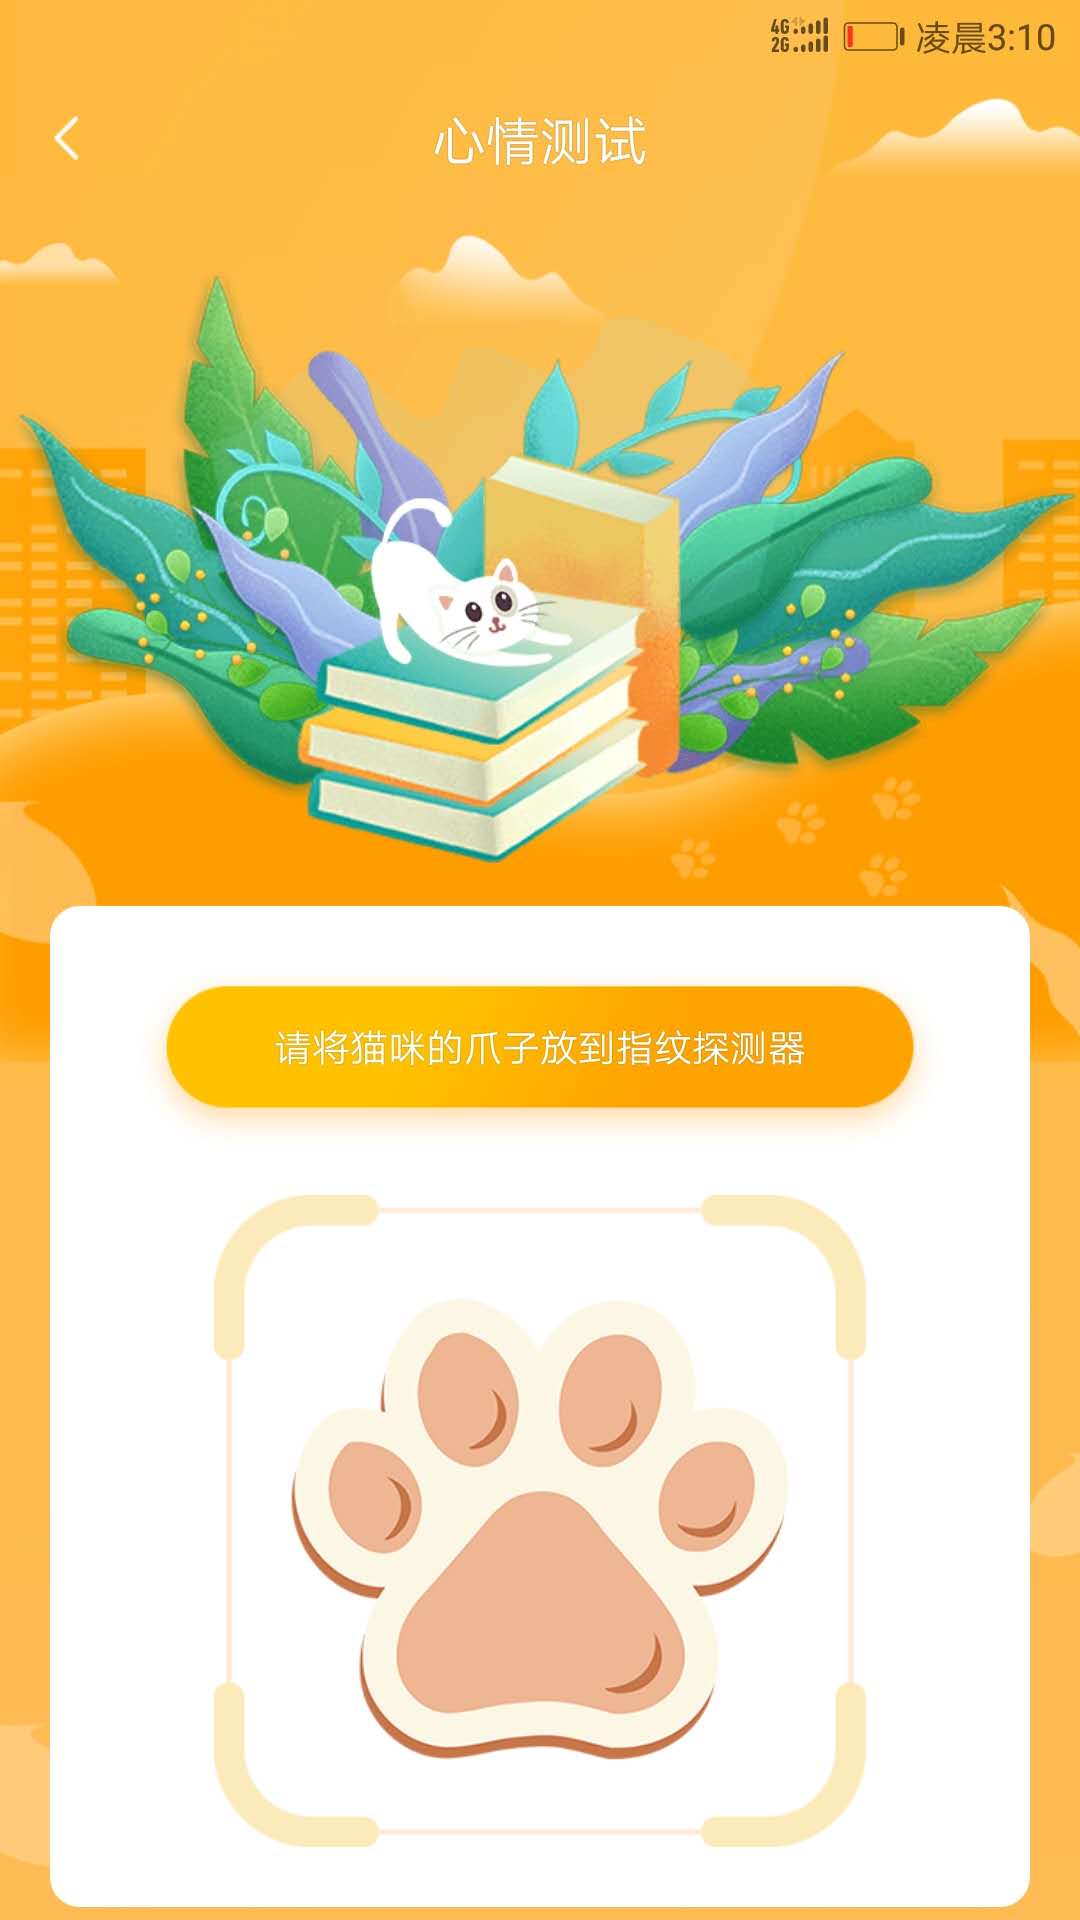 狗语人狗动物翻译器app